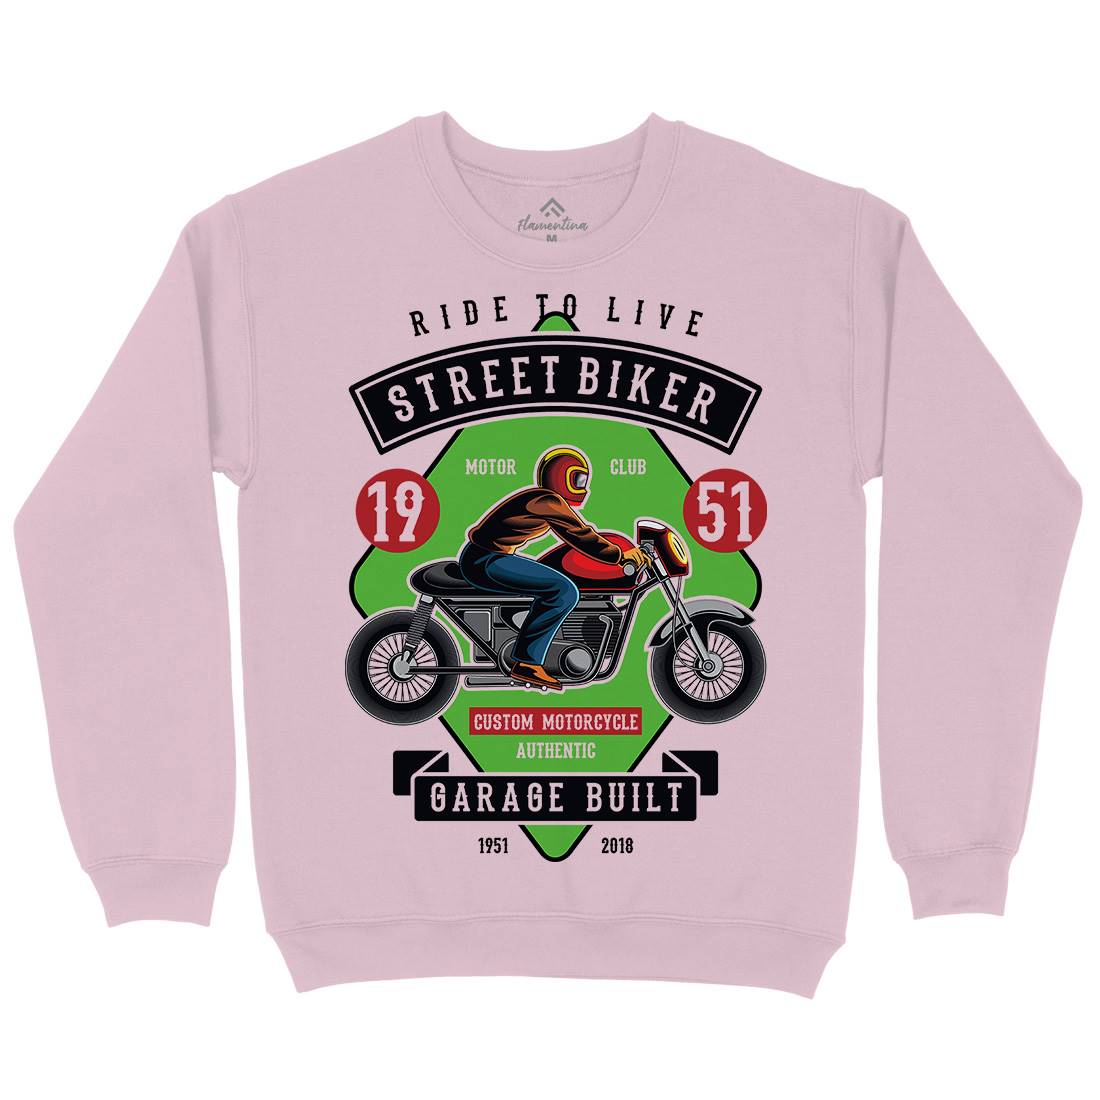 Street Biker Kids Crew Neck Sweatshirt Motorcycles C453